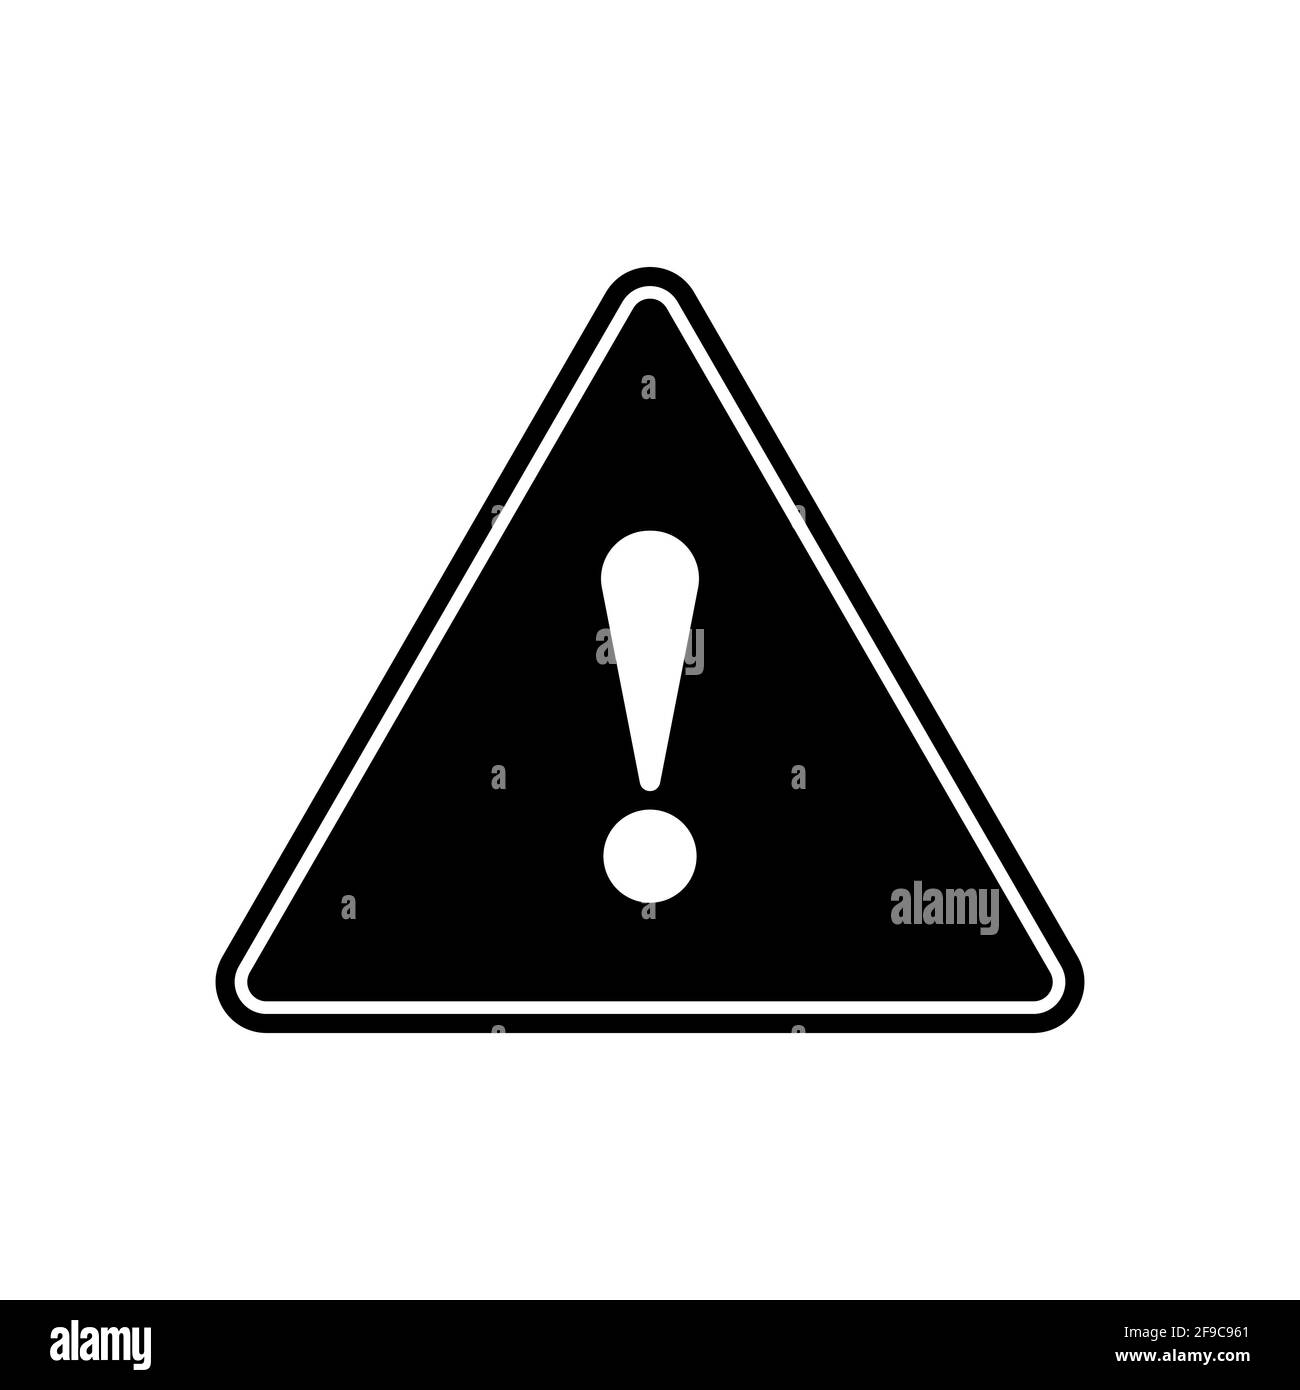 warning symbol black and white